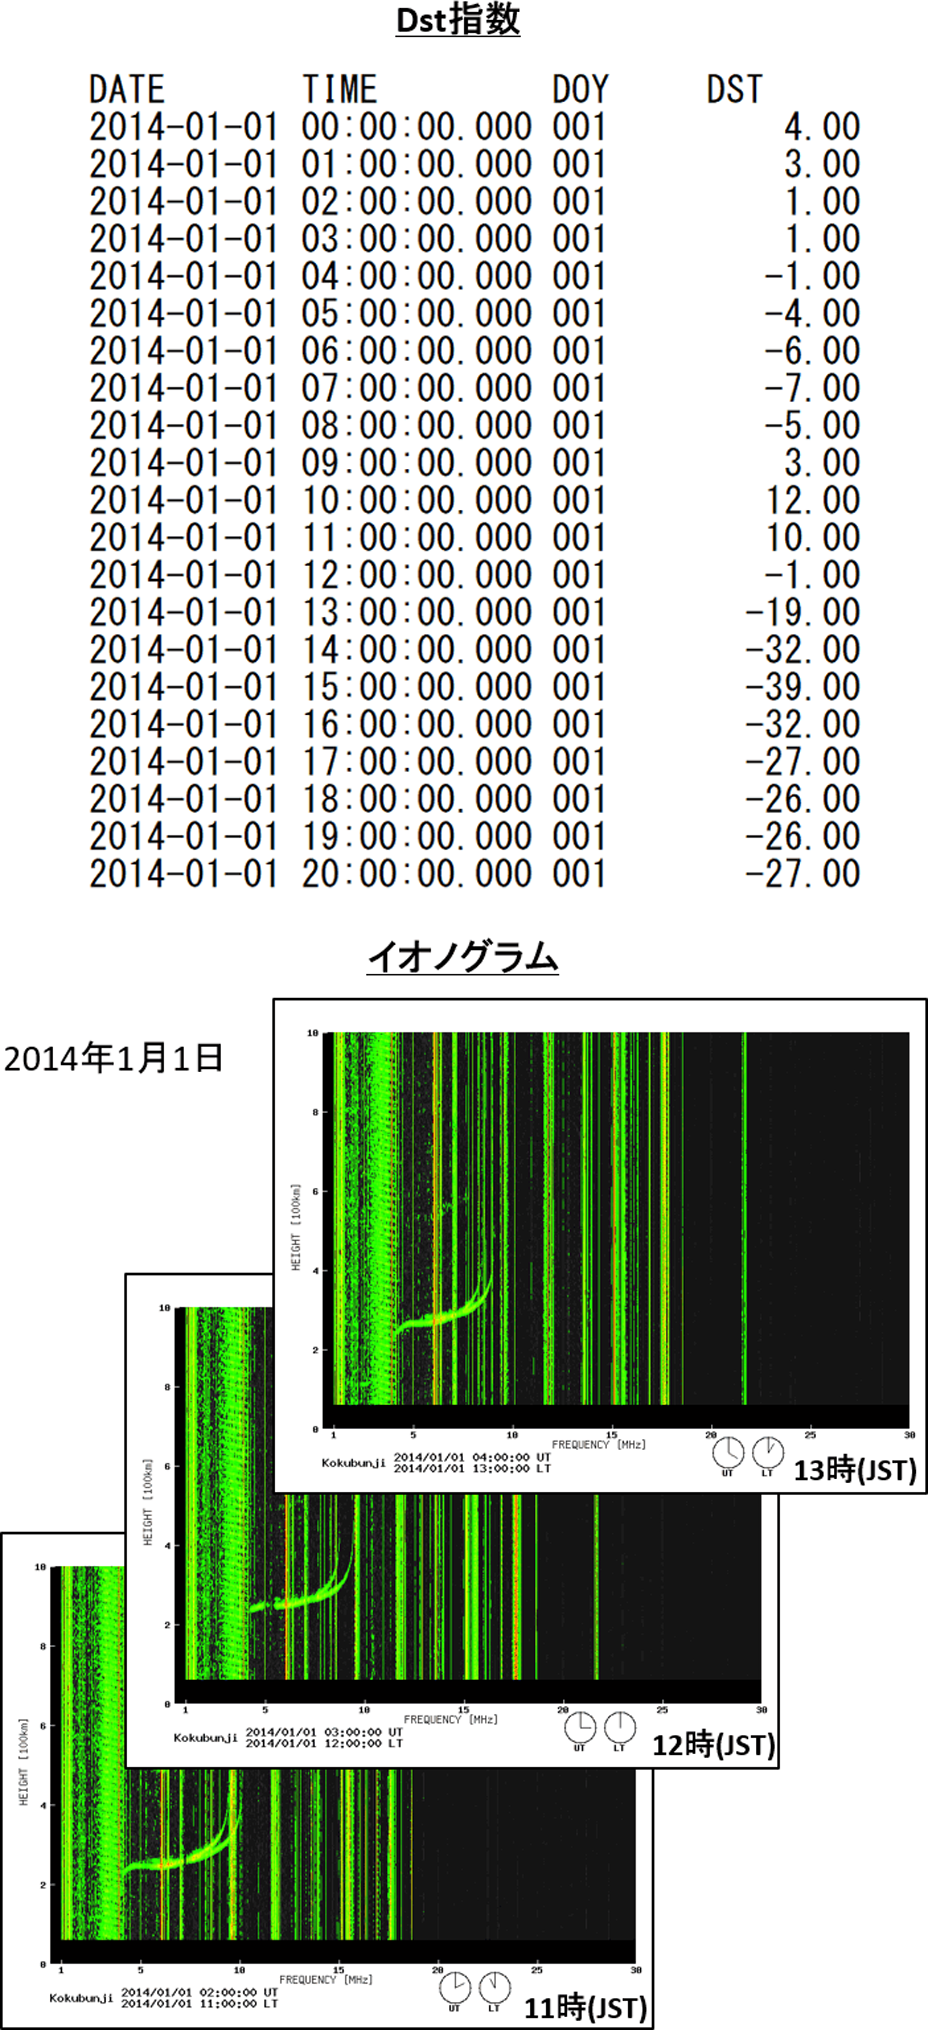 2014年1月1日のDst指数とイオノグラム　Dst index and ionogram on January 1, 2014.